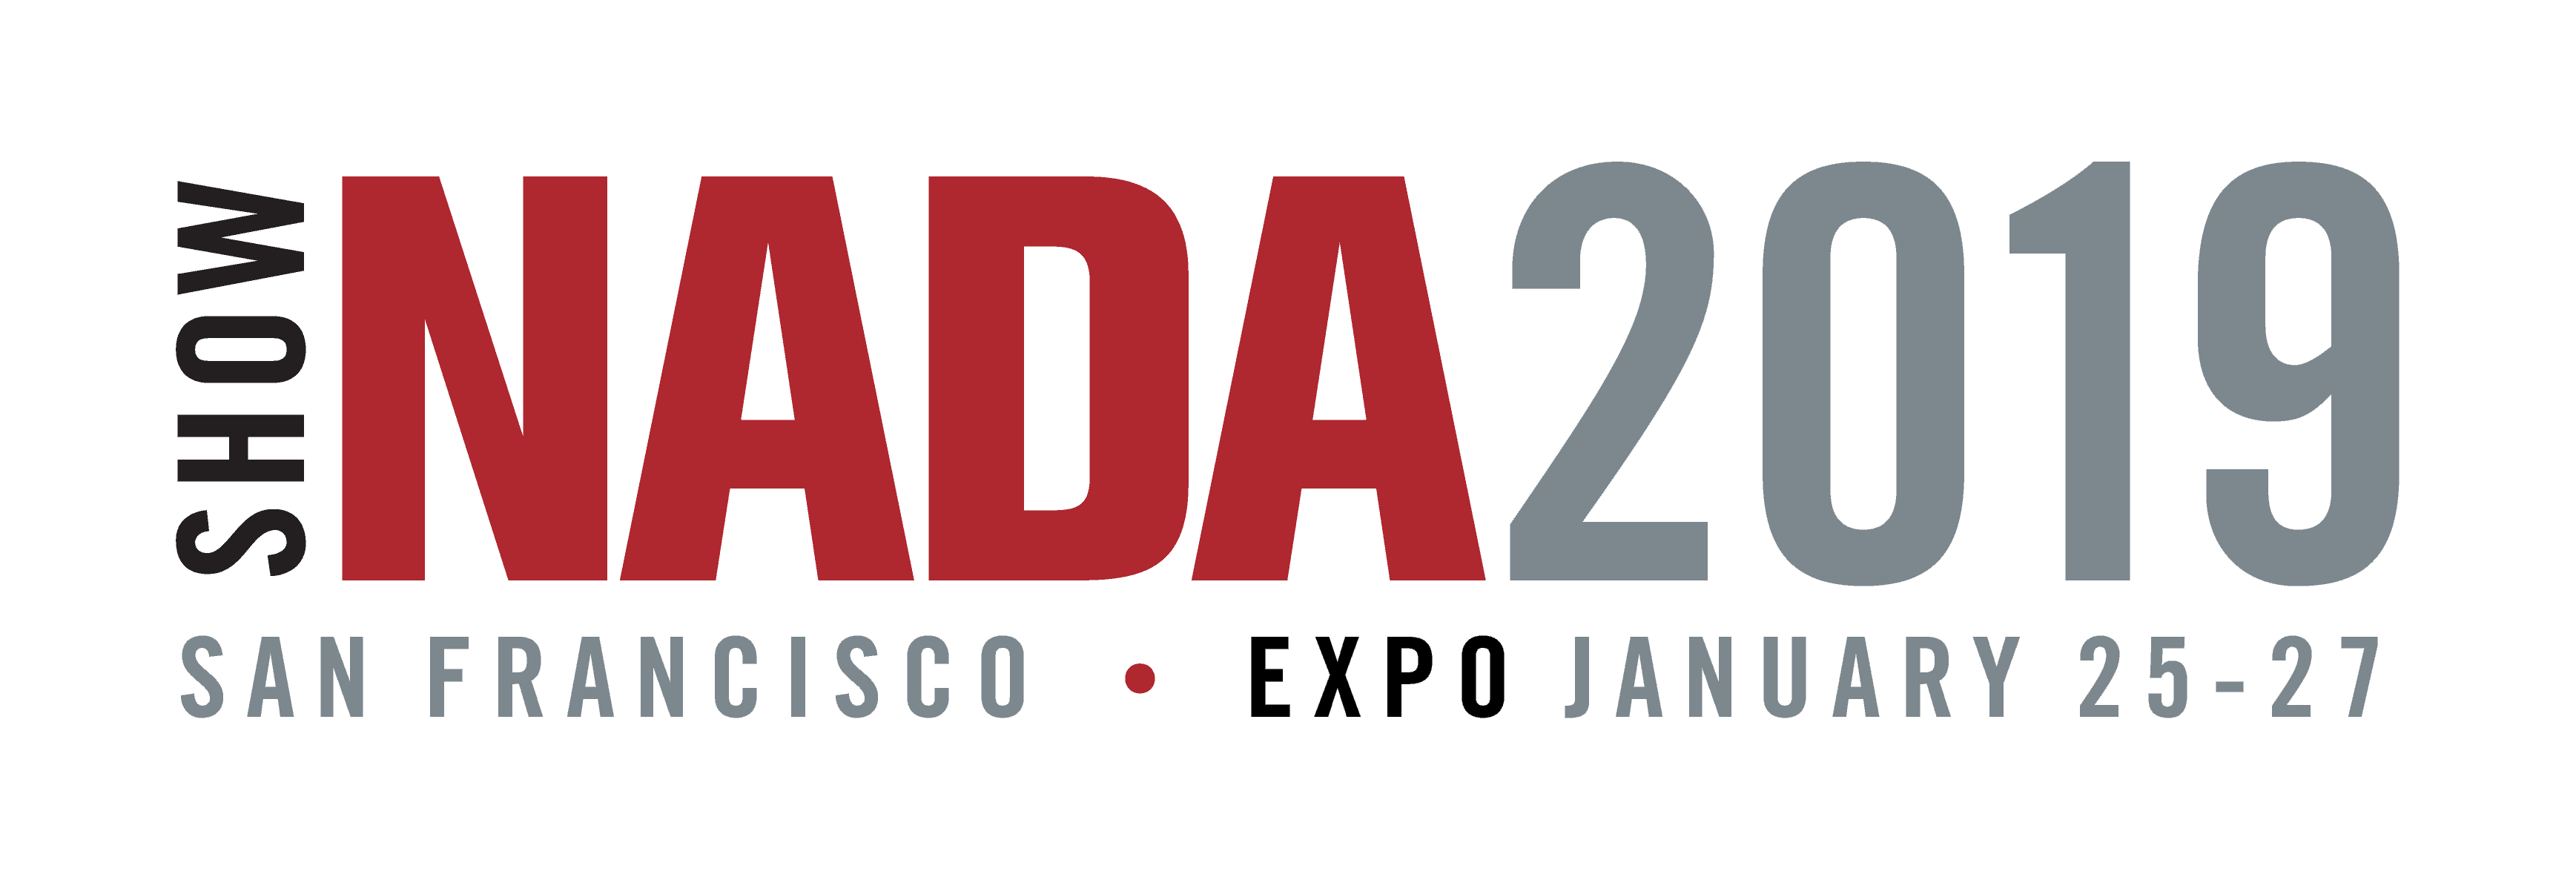 NADA 2019 EXPO